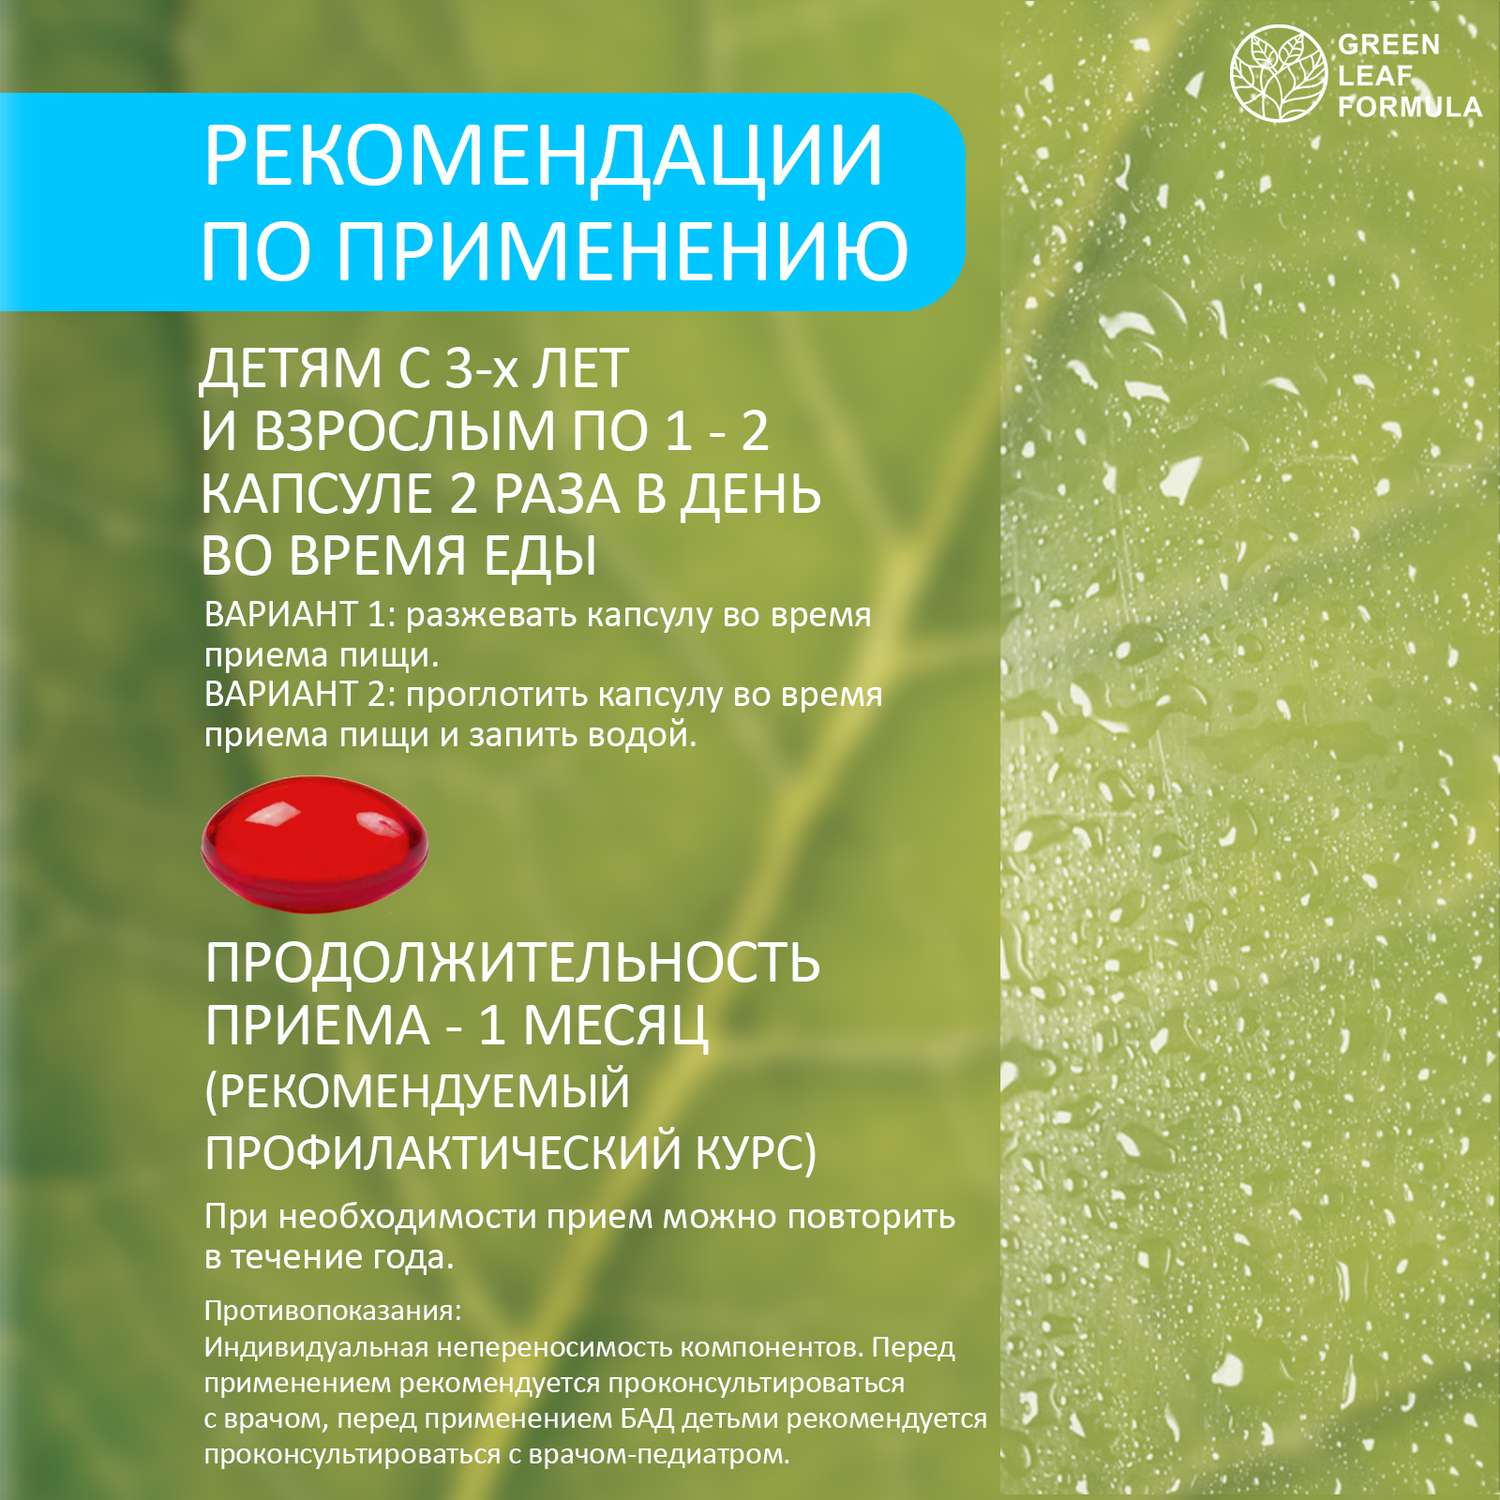 Детская омега 3 и метабиотики Green Leaf Formula для кишечника витаминный комплекс для иммунитета 120 шт - фото 8